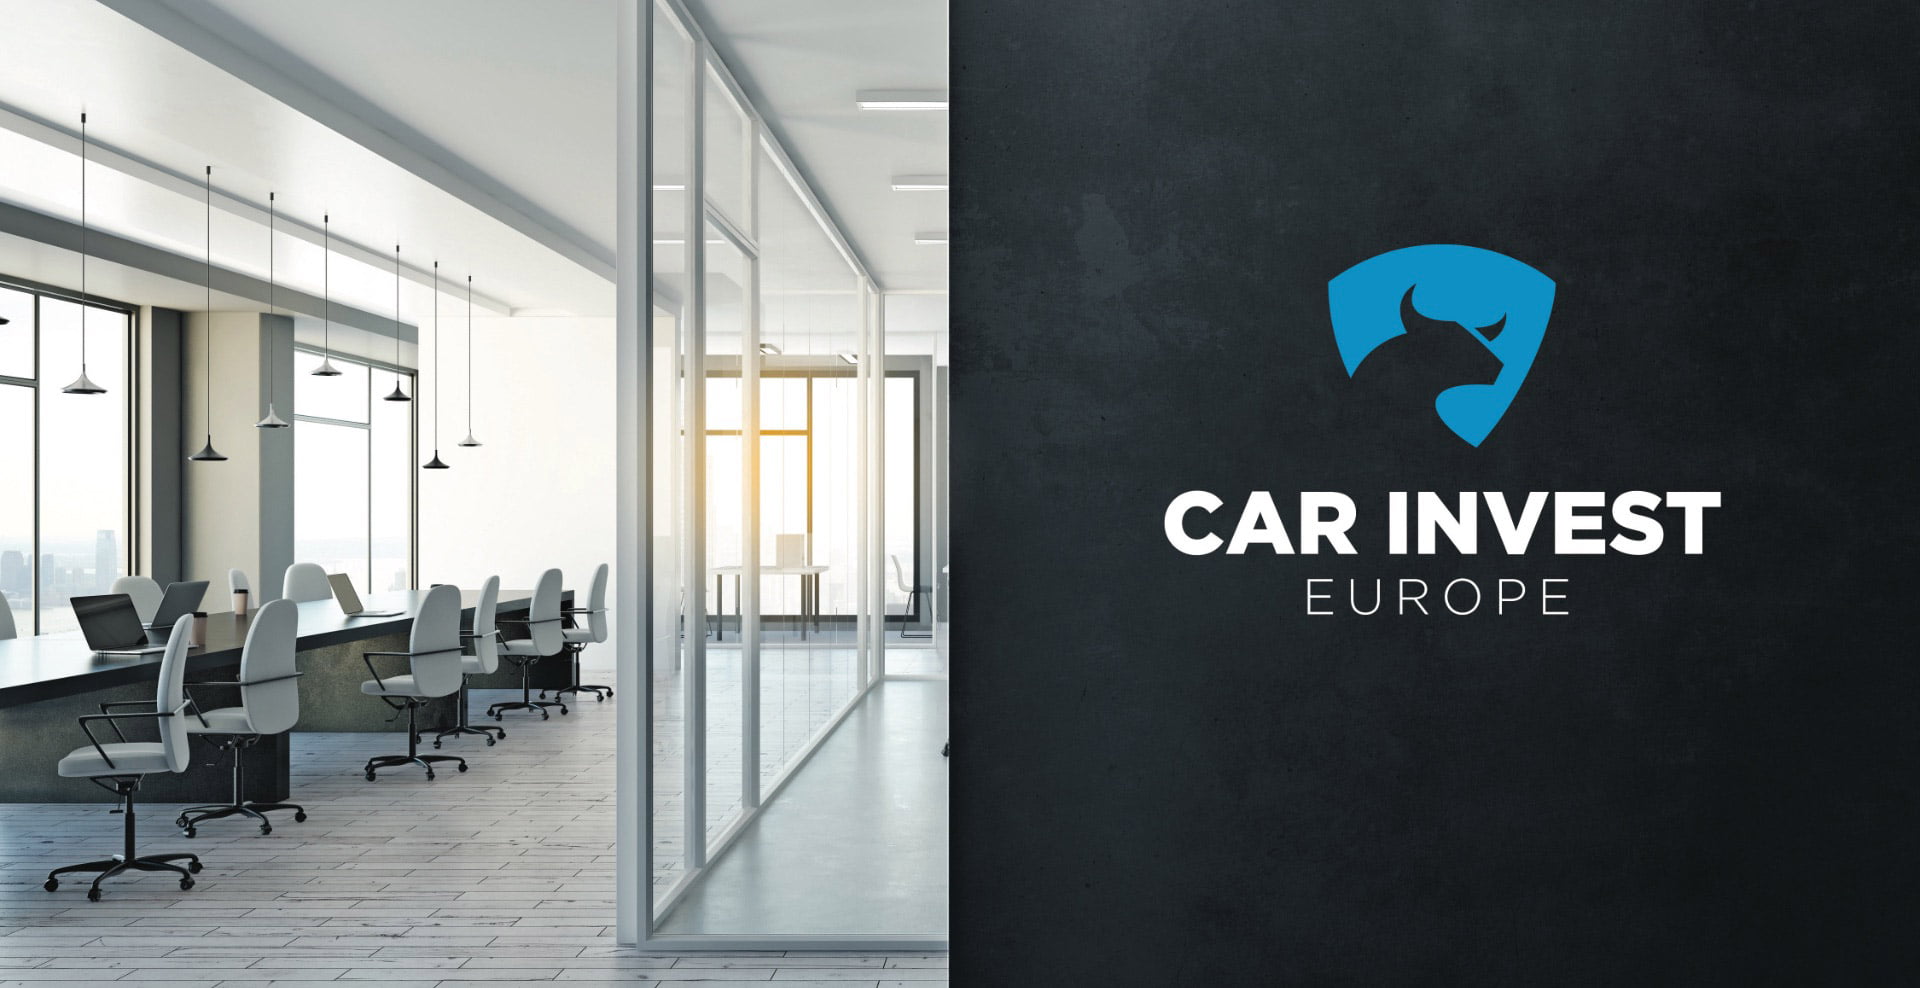 Bureaux Car Invest Europe